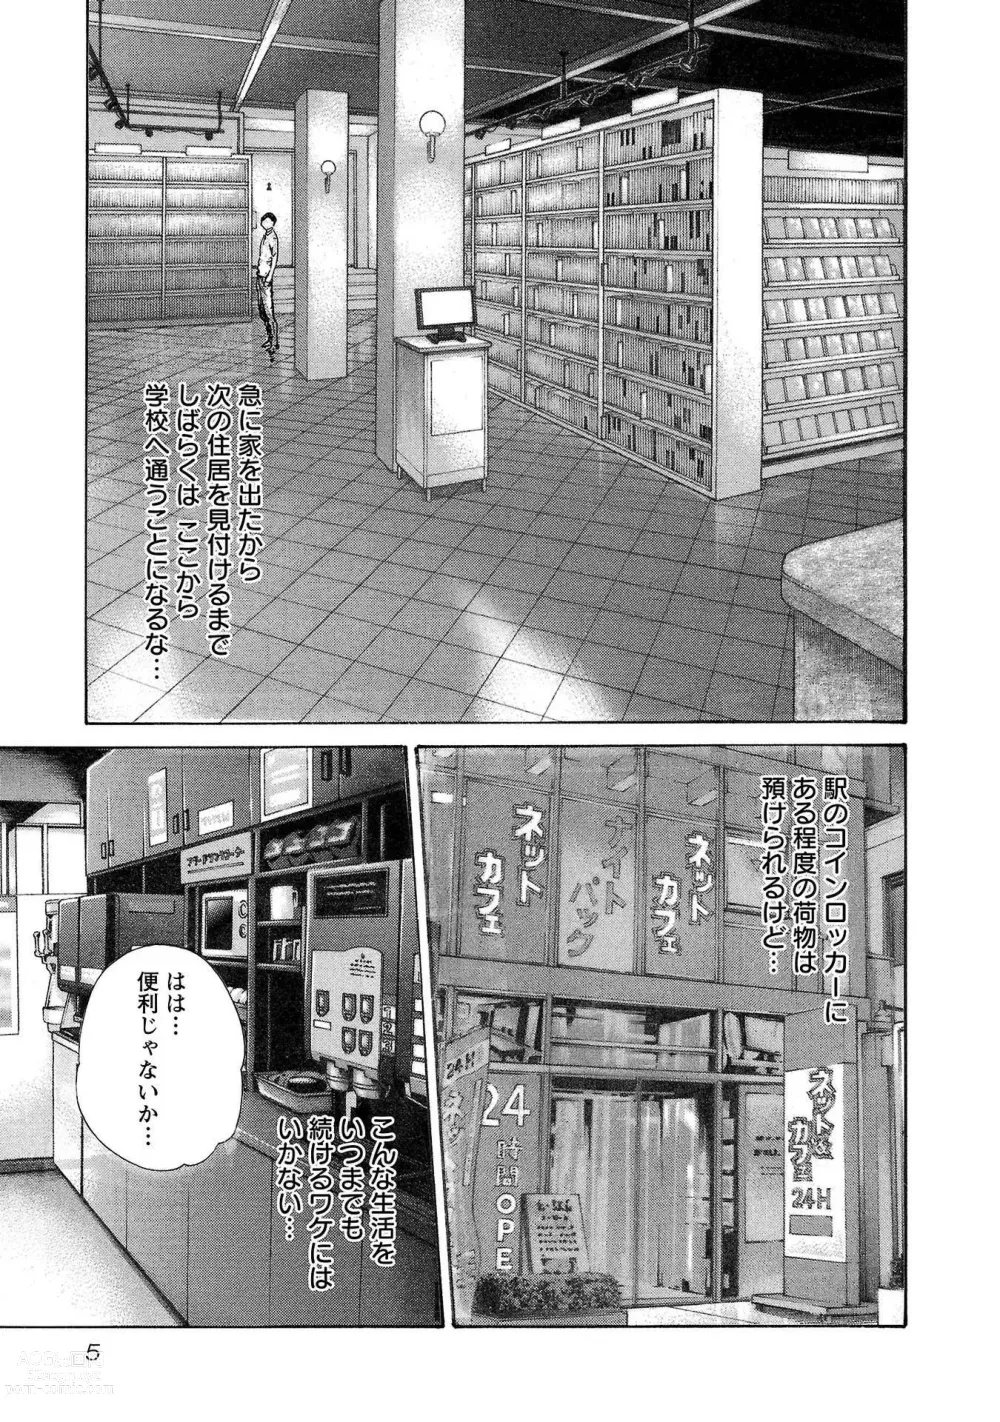 Page 6 of manga sense volume 13